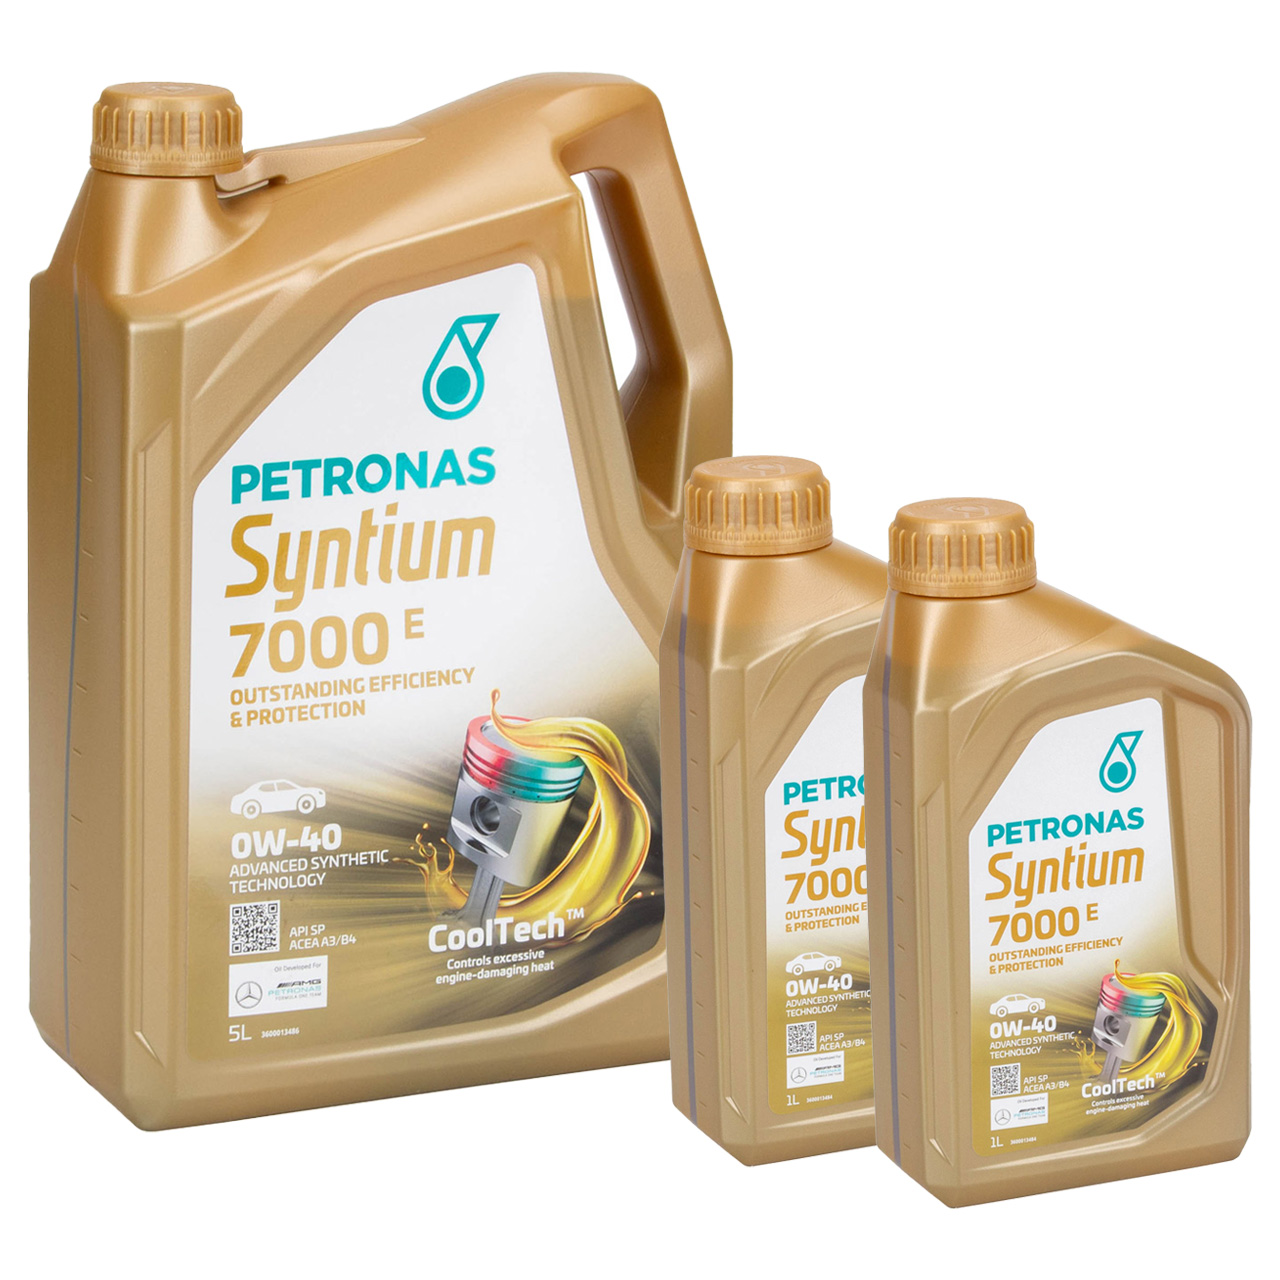 7L 7 Liter PETRONAS Syntium 7000 E 0W-40 Motoröl Öl BMW LL-01 MB 229.5 VW 502/505.00